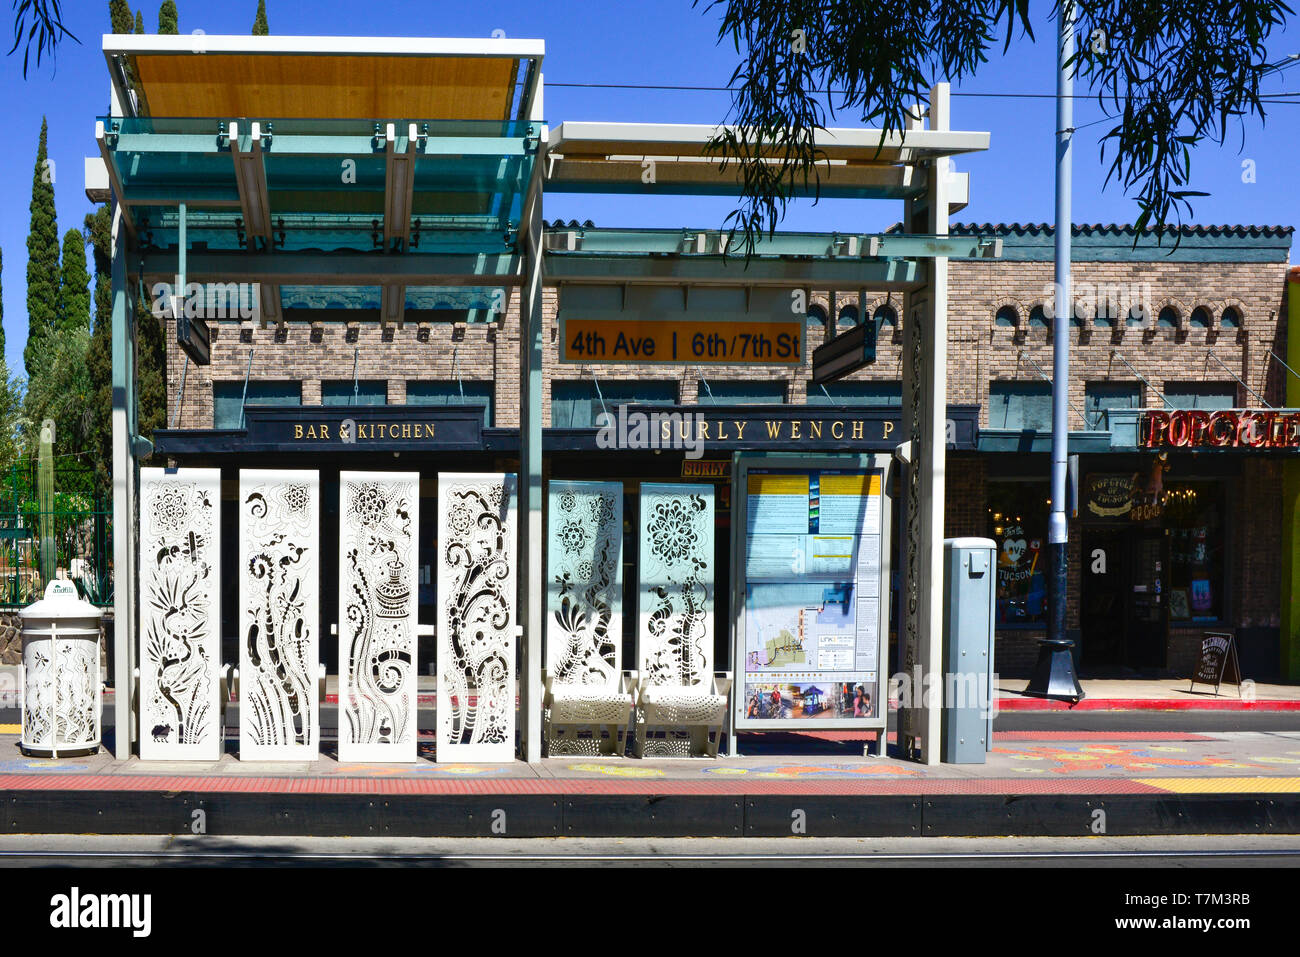 Un arrêt de tramway artistique à la 4e Avenue @ 6e/7e rue, avec découpe de métaux d'art, juste par le bourru Vénom pub historique sur la 4e Avenue, le centre-ville de Tuscon, AZ Banque D'Images